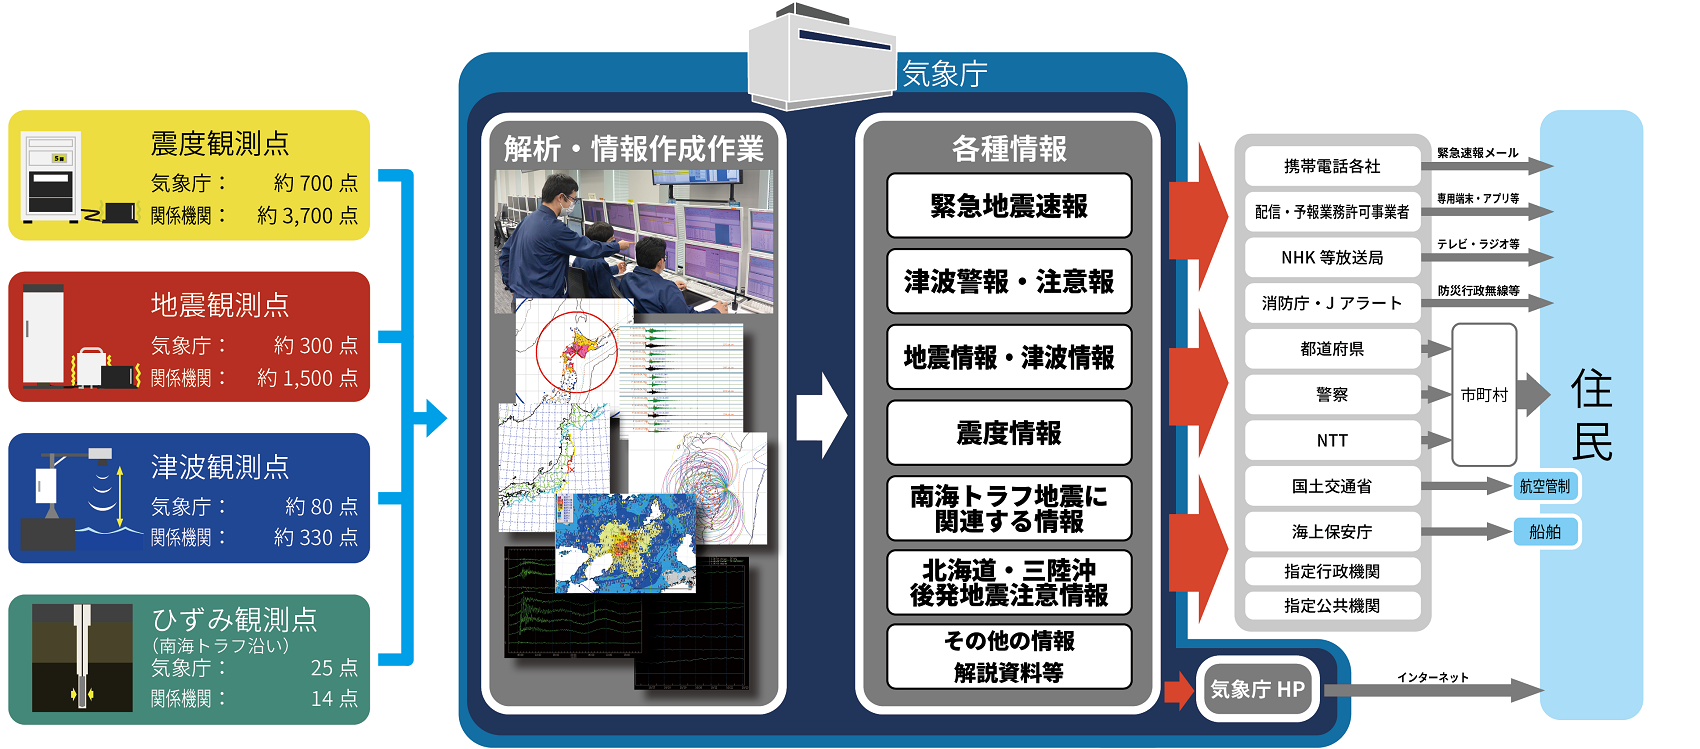 地震・津波の観測監視体制のイメージ図